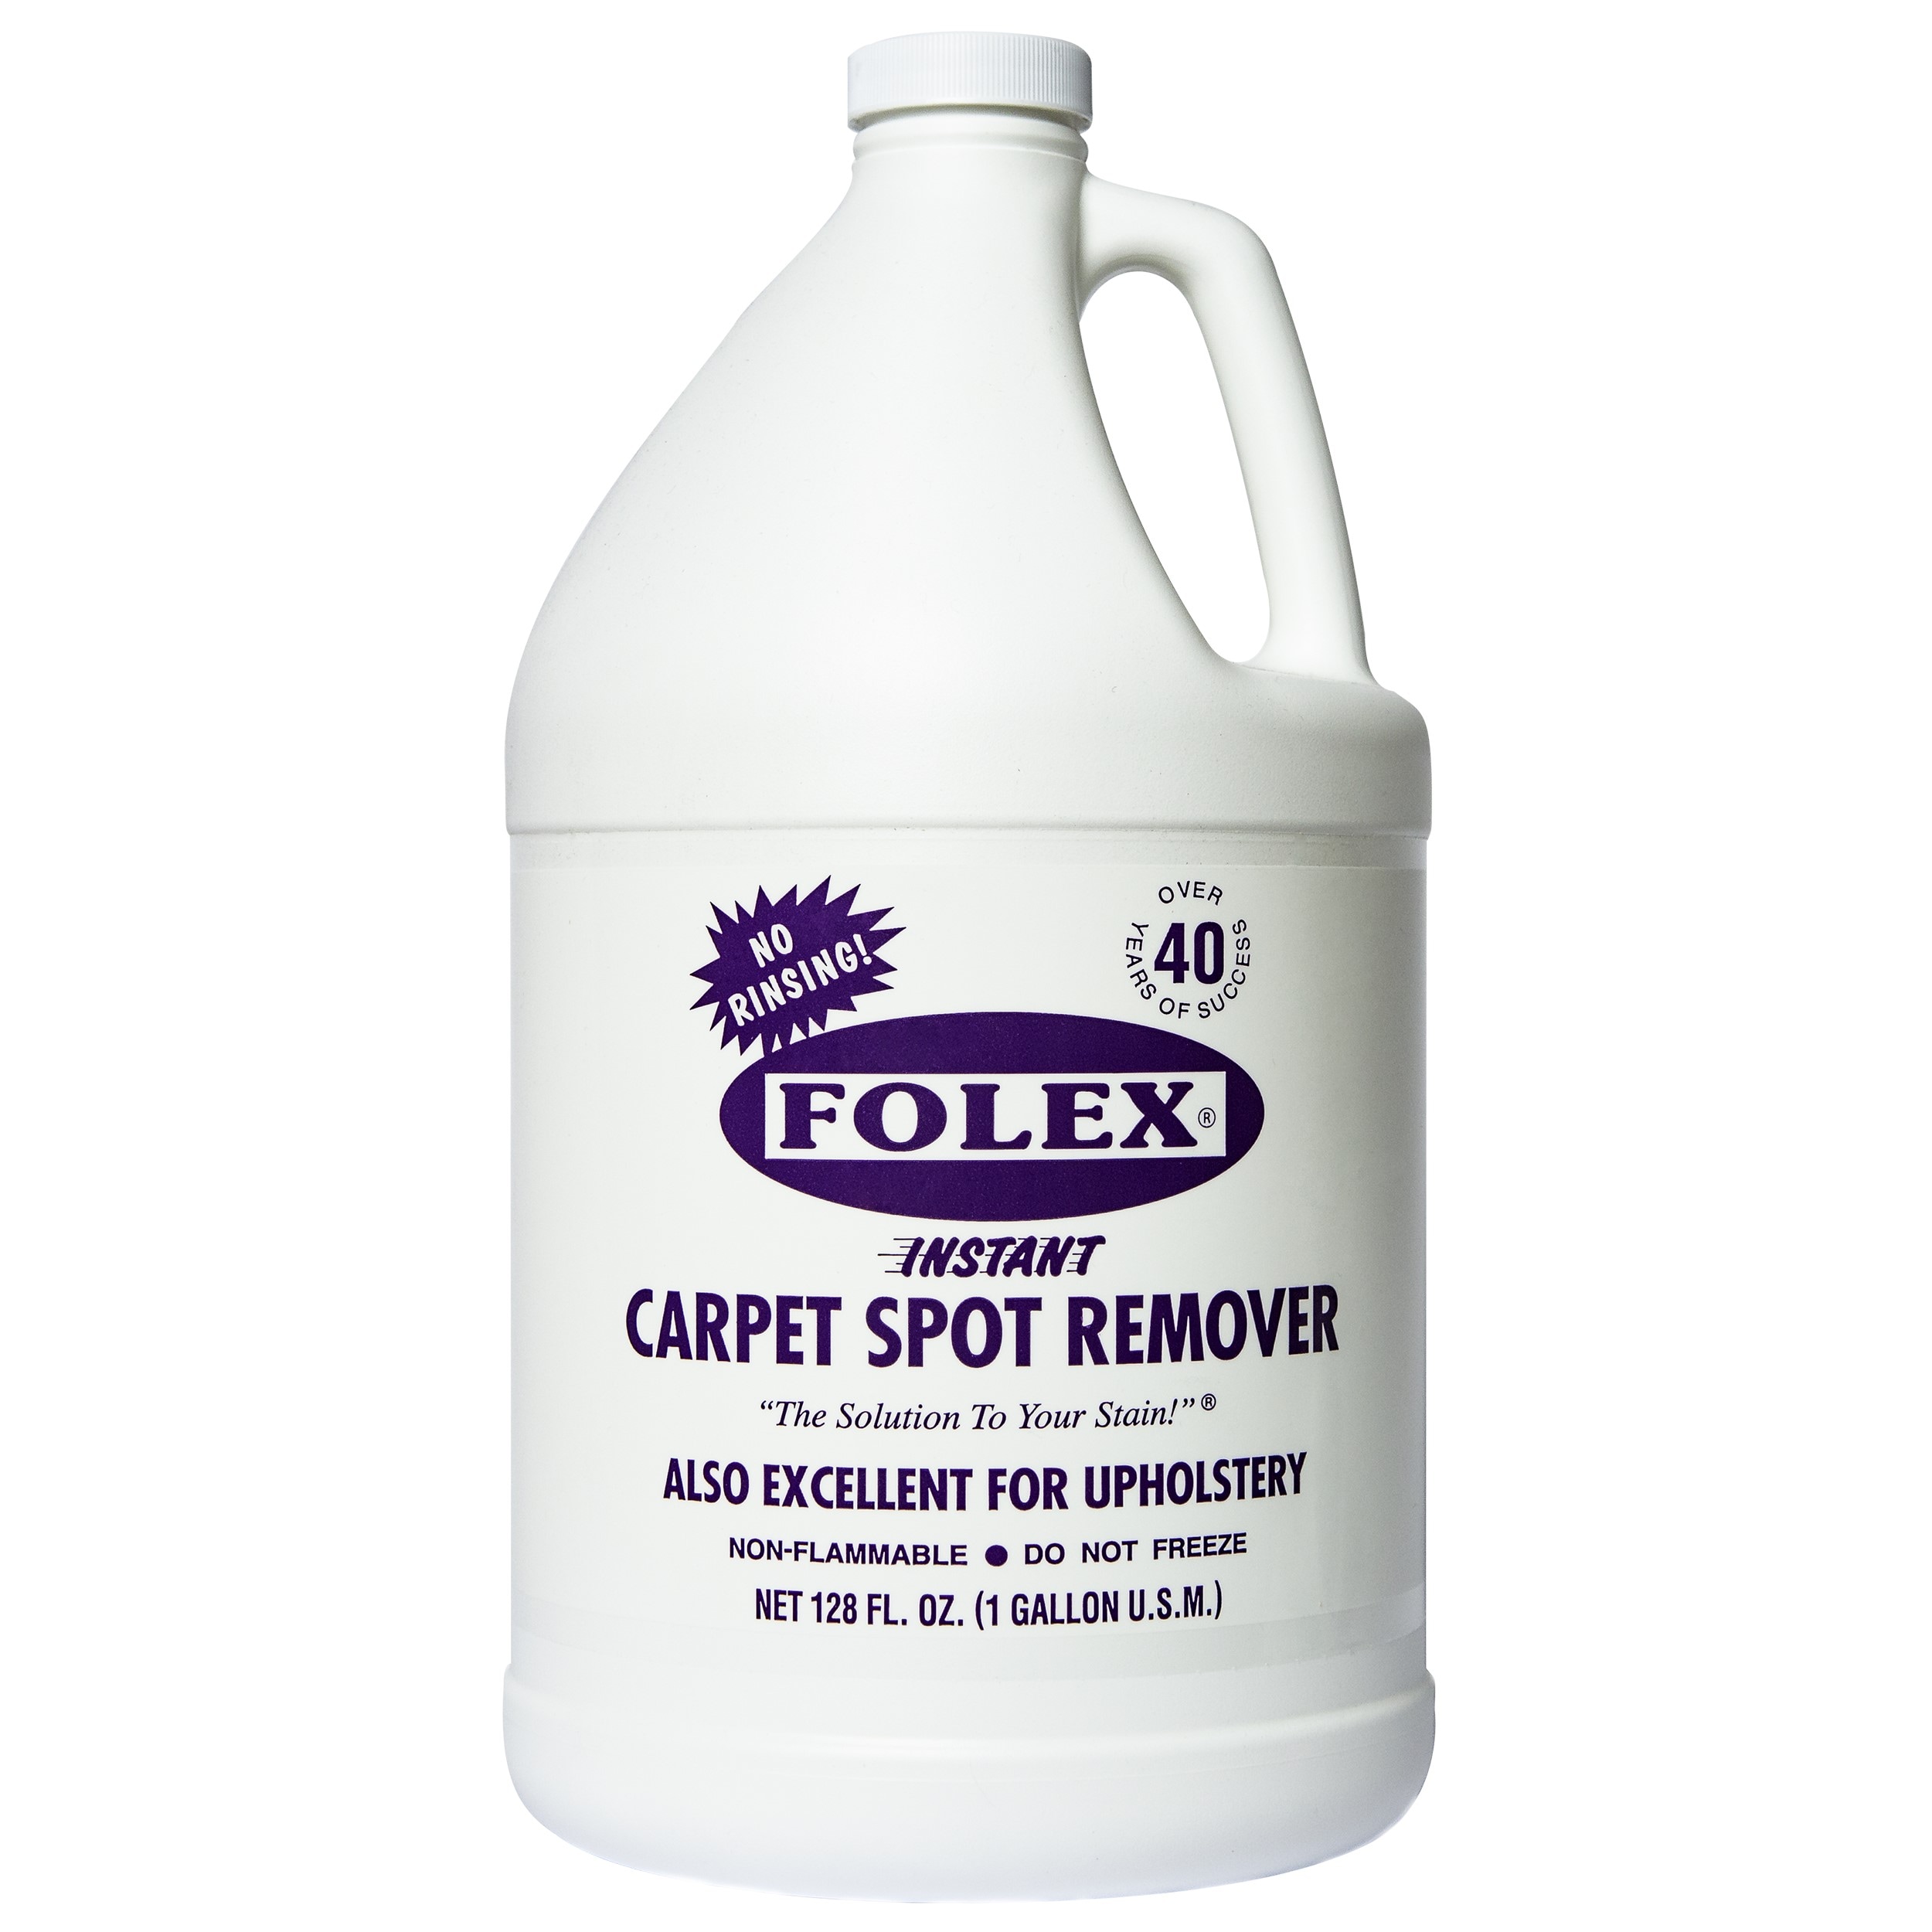 Folex Instant Carpet Spot Remover Review